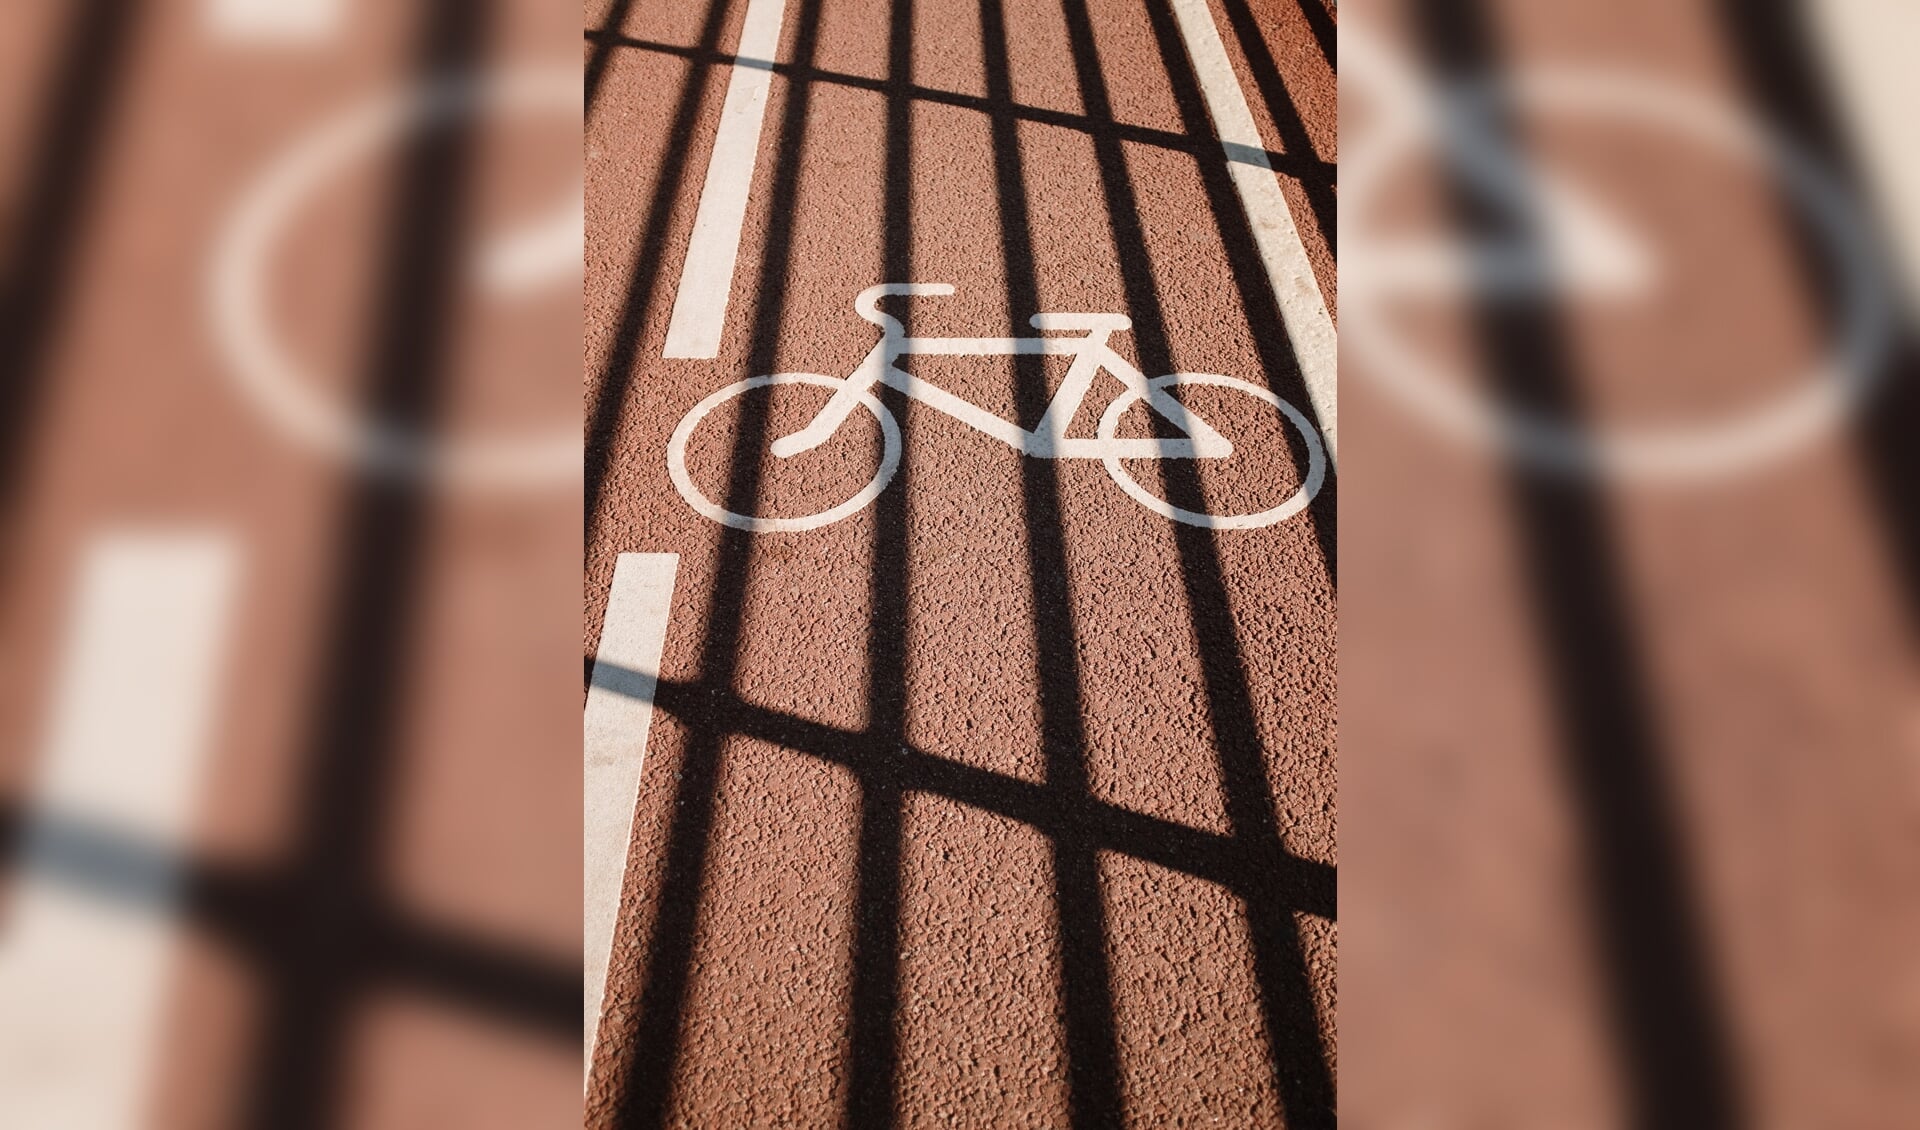  De fietsoversteekplaatsen op de rijbaan worden aangepakt en rood gemaakt. 